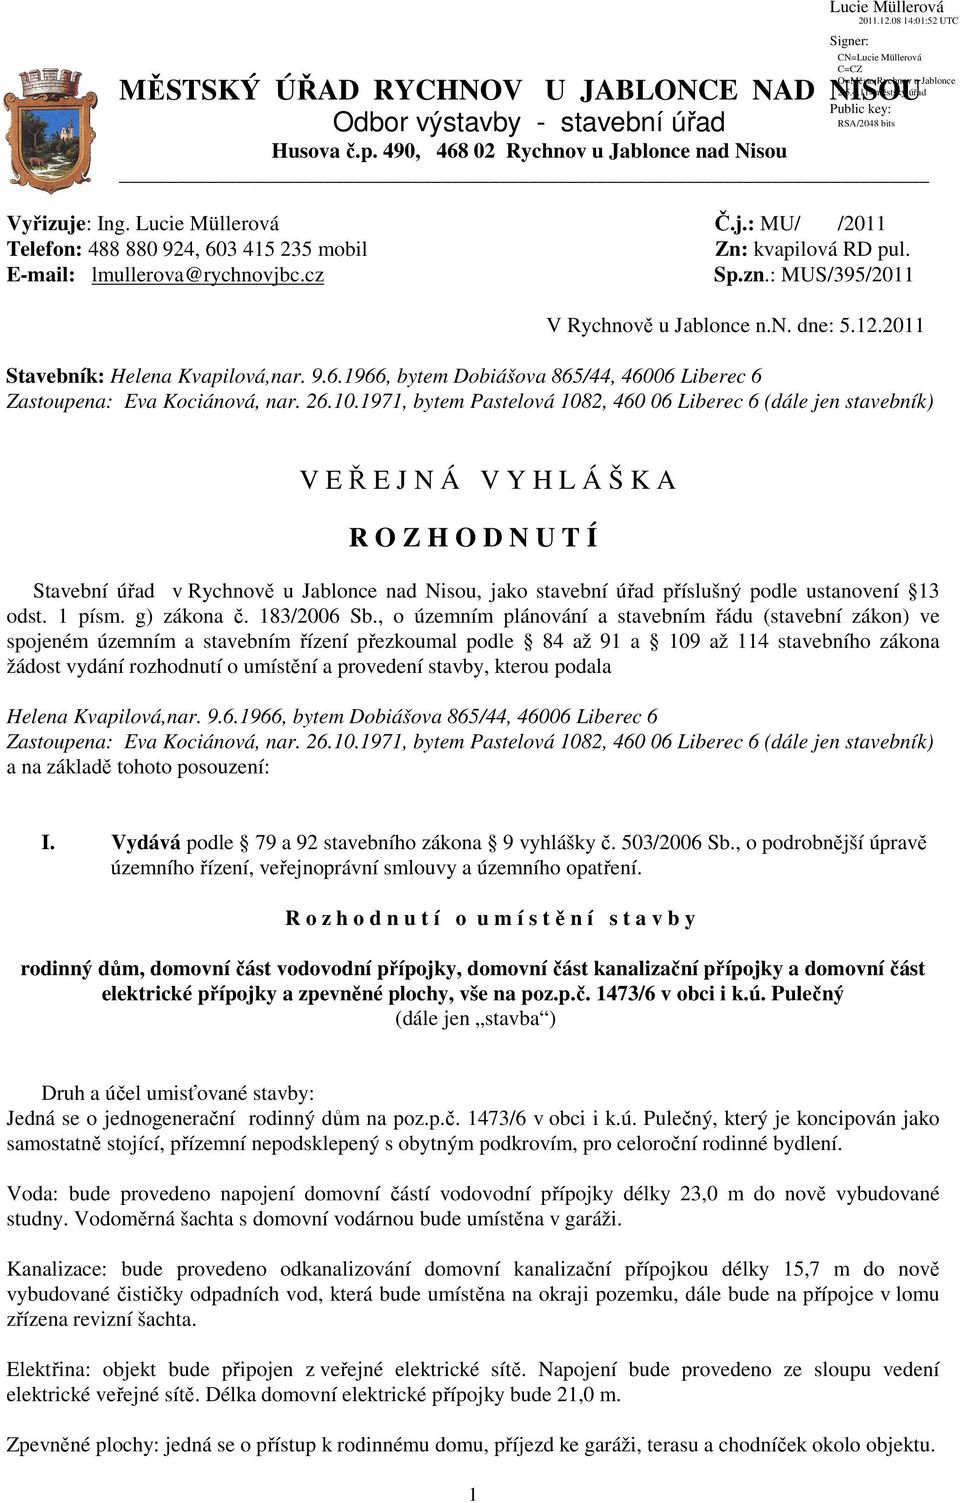 2011 Stavebník: Zastoupena: Eva Kociánová, nar. 26.10.